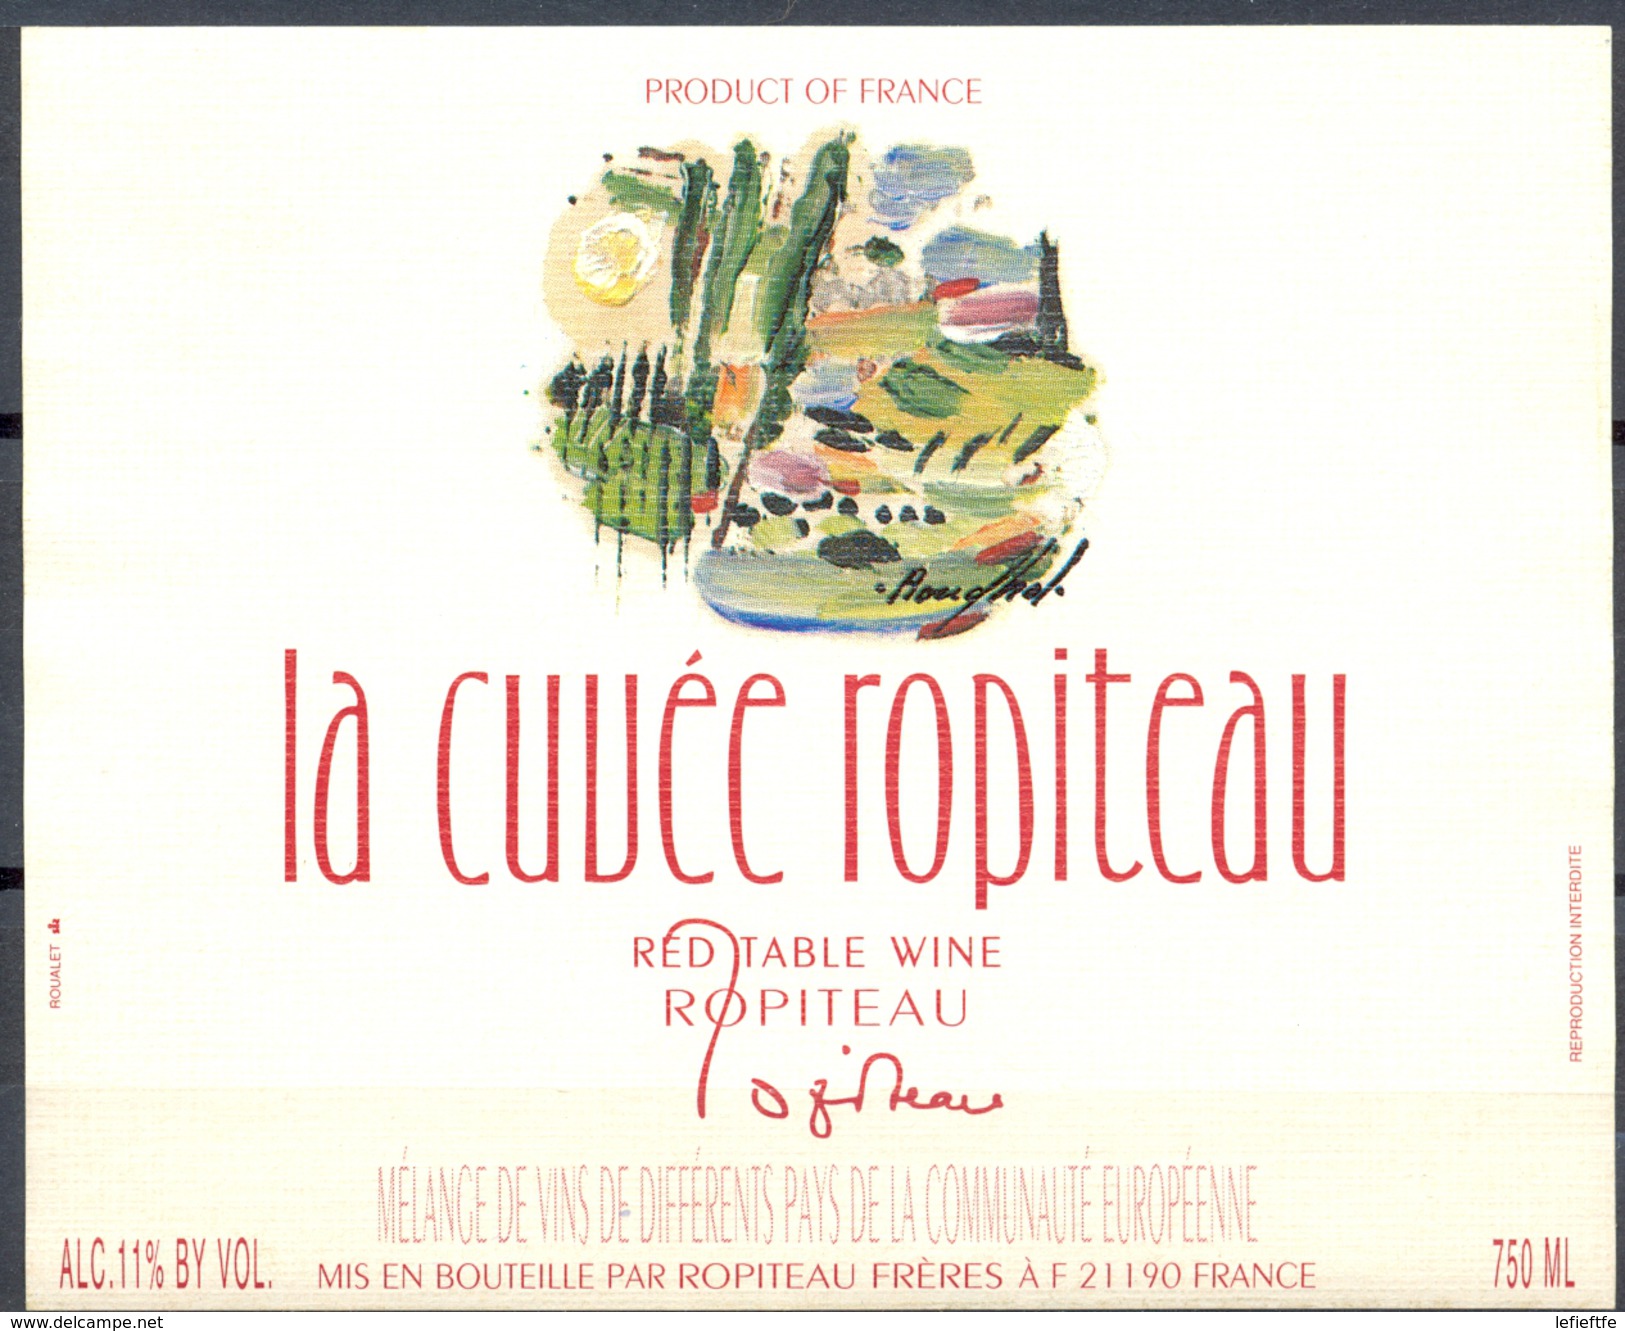 057 - La Cuvée Ropiteau  - Red Table Wine - Mélange De Différents Vins De La Communauté Europénne - Robiteau Frères - Rotwein